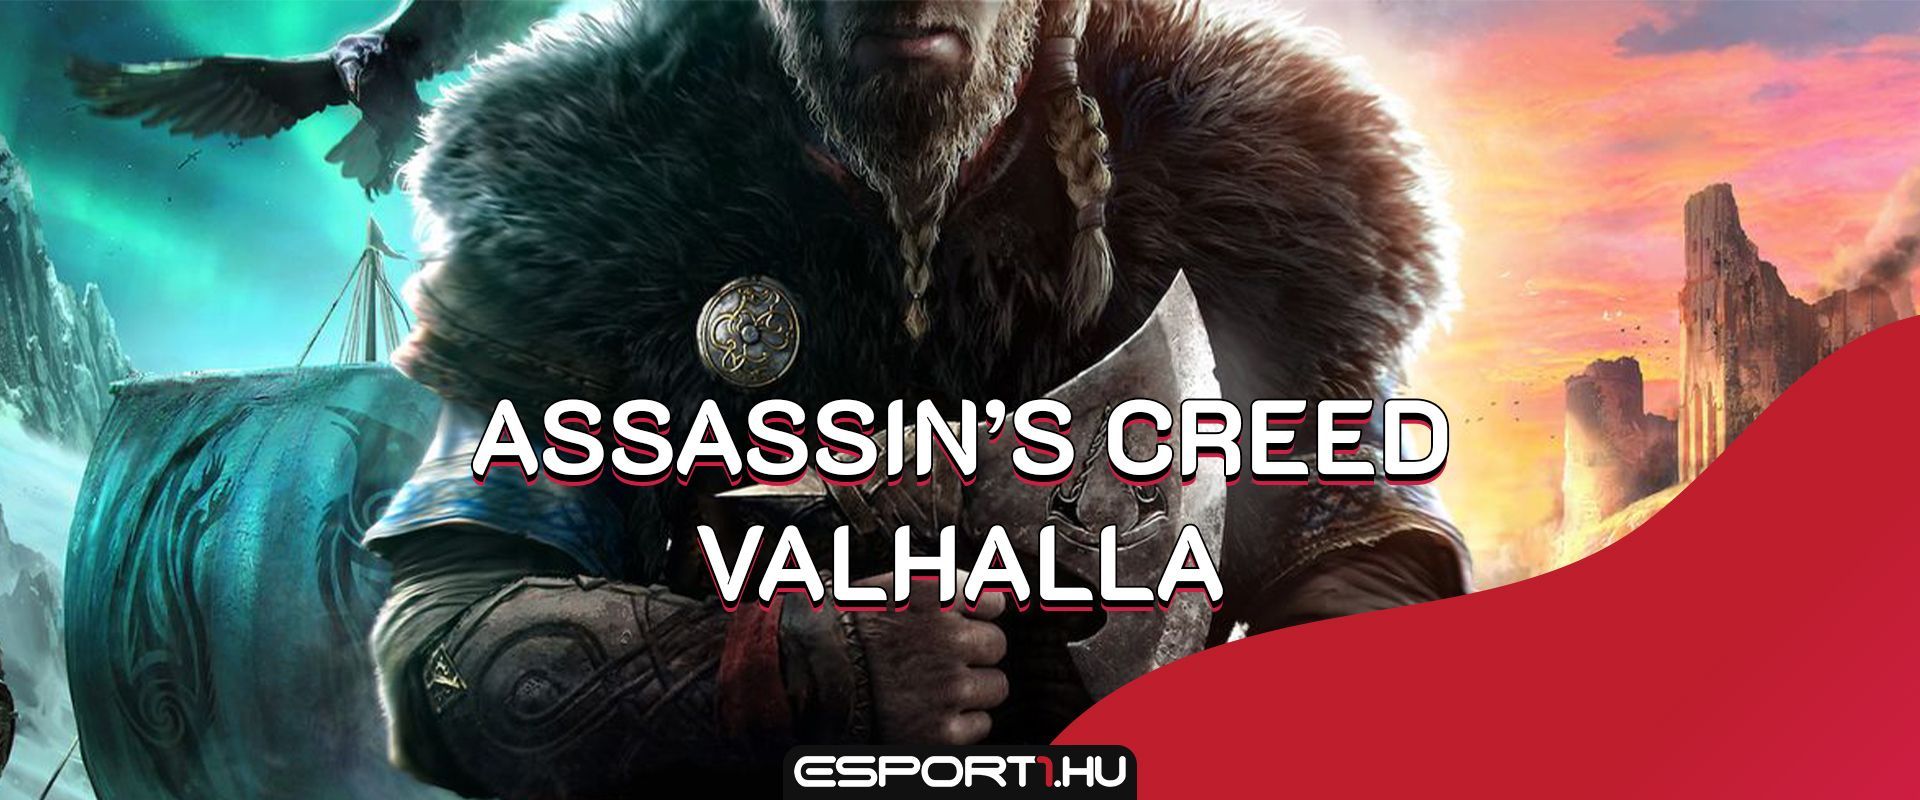 Bejelentették az Assassin's Creed Valhallát, itt az első teaser